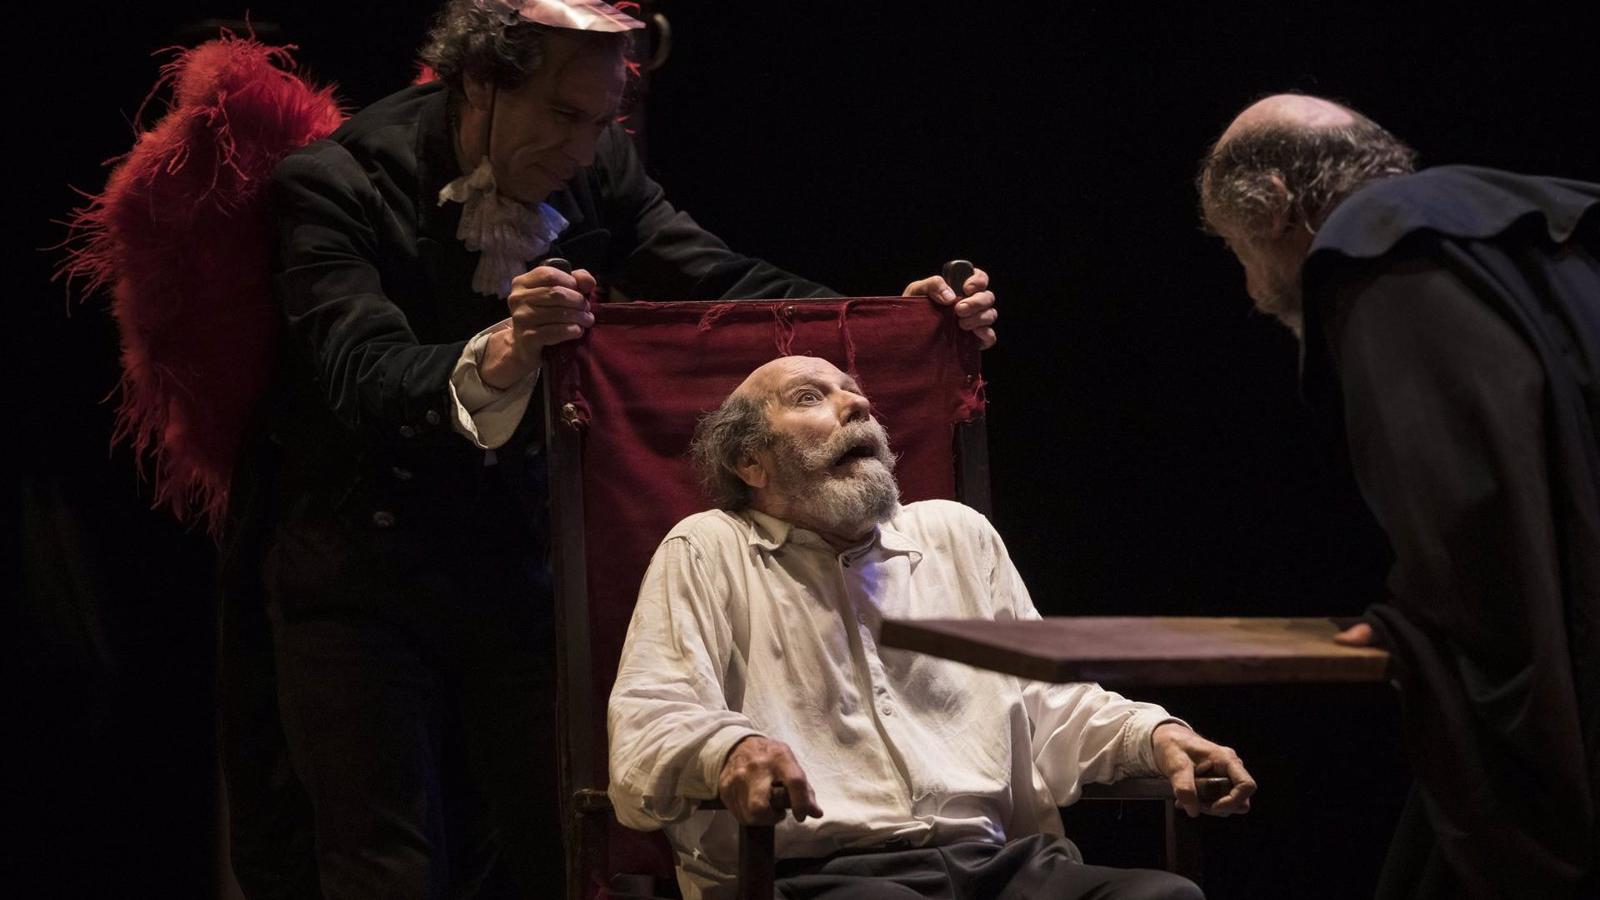 La Zaranda propone una oda a la esperanza desde la sátira en el Teatro Español con 'Manual para armar un sueño' hasta el 27 de marzo